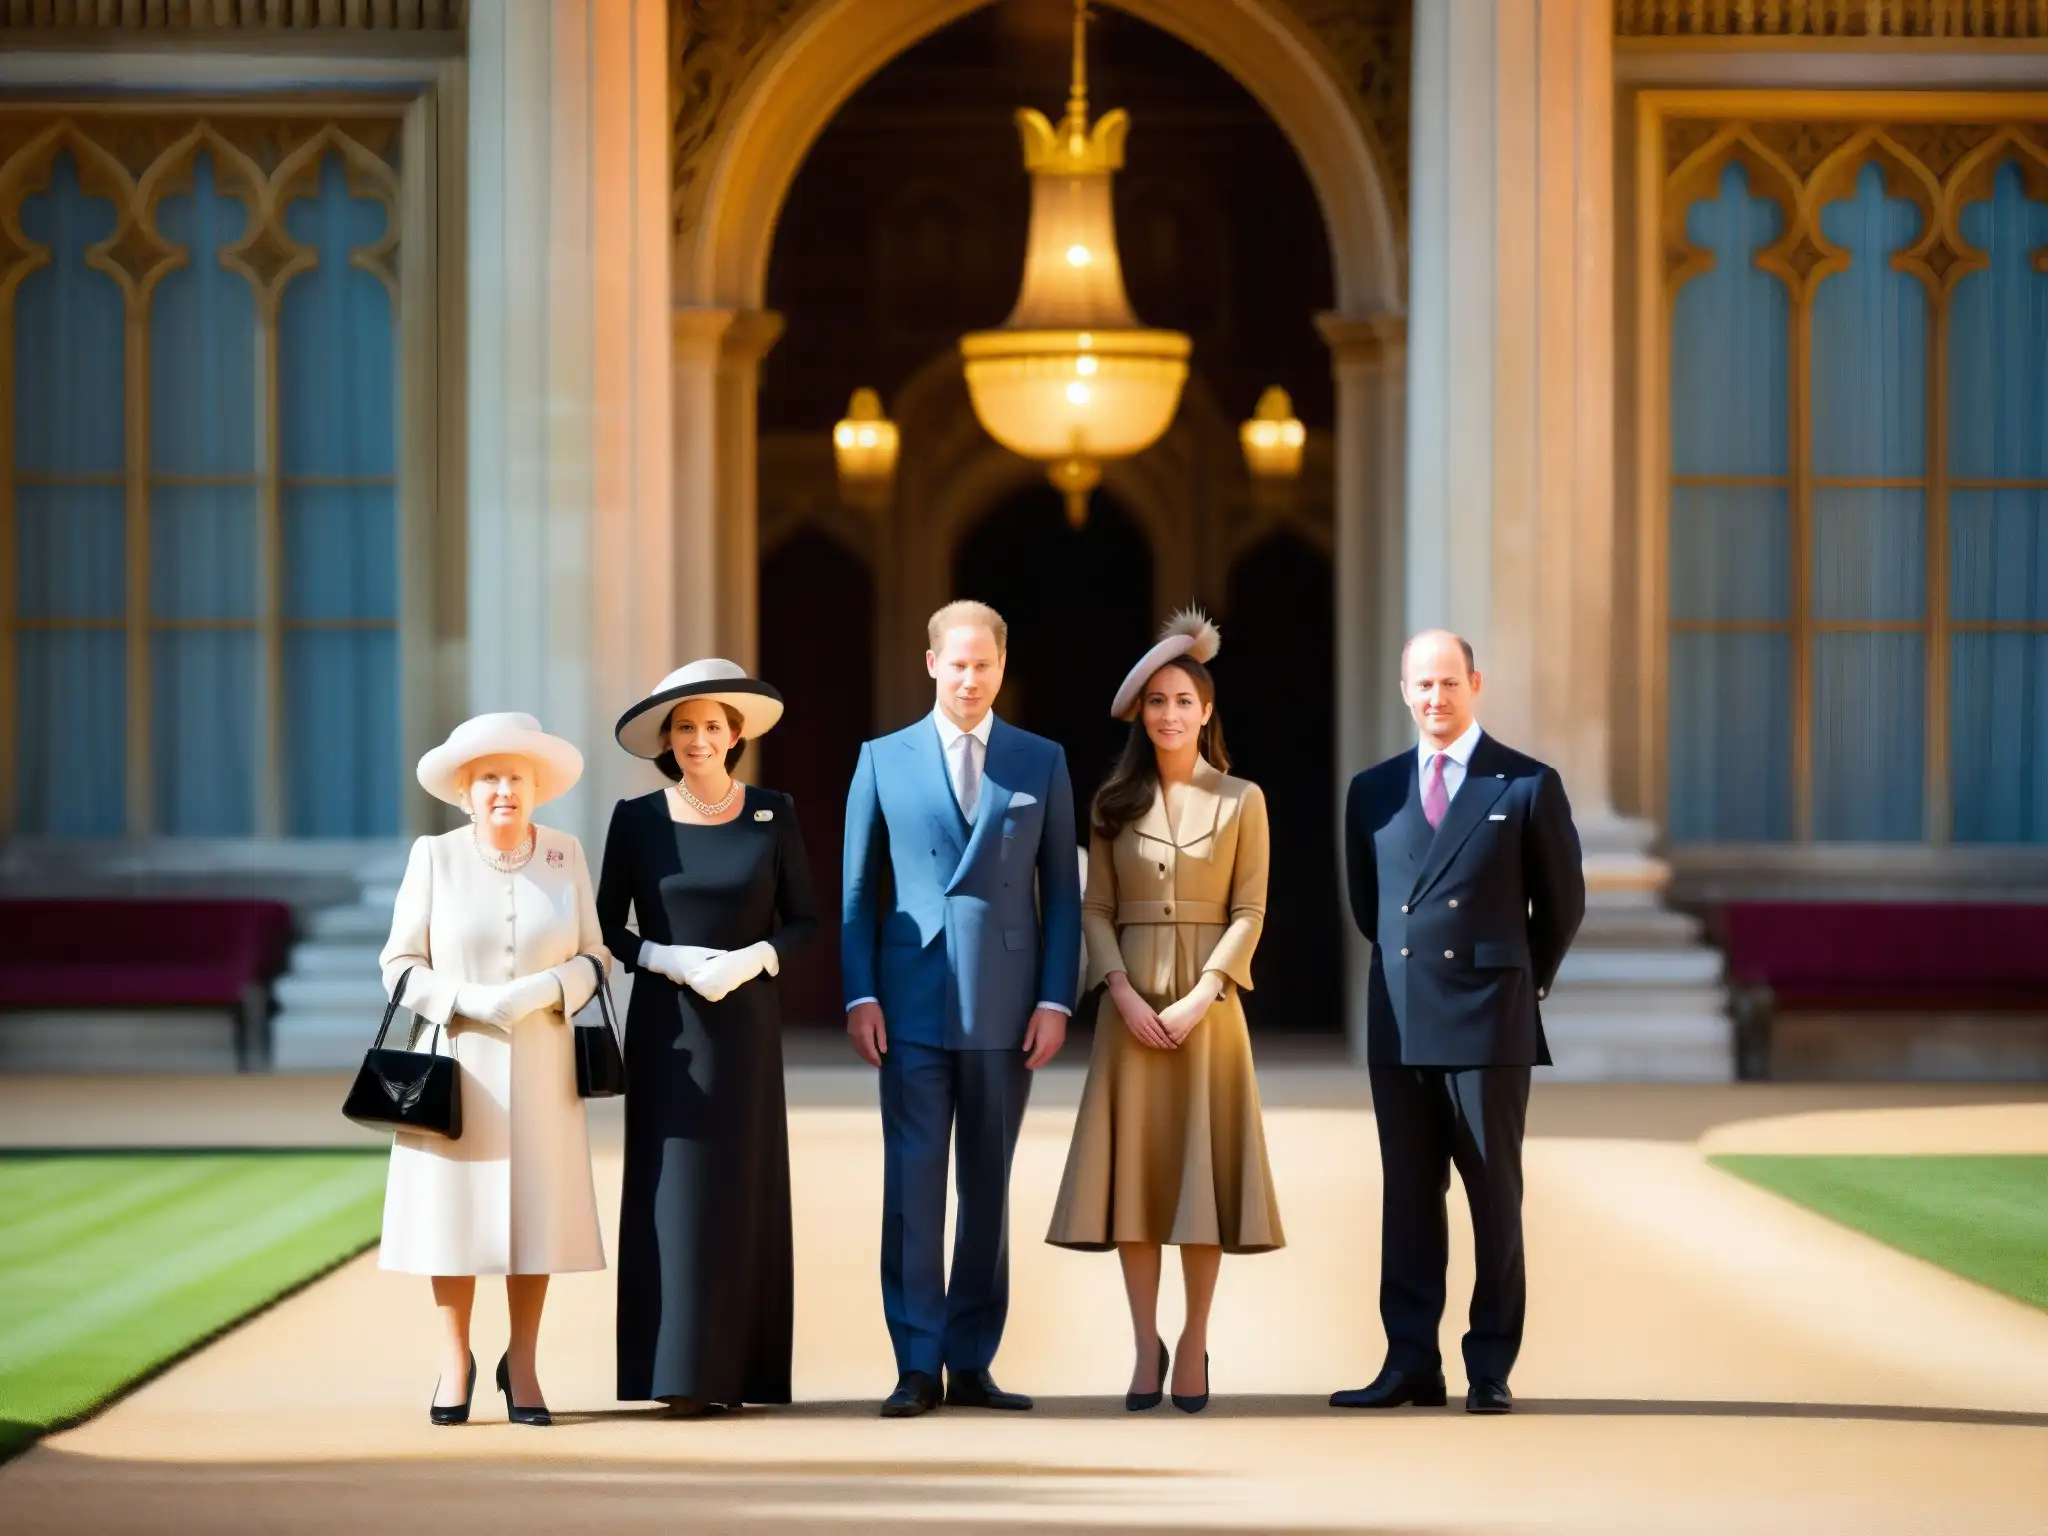 La familia real británica frente a un majestuoso palacio, con expresiones serias y atuendos regios